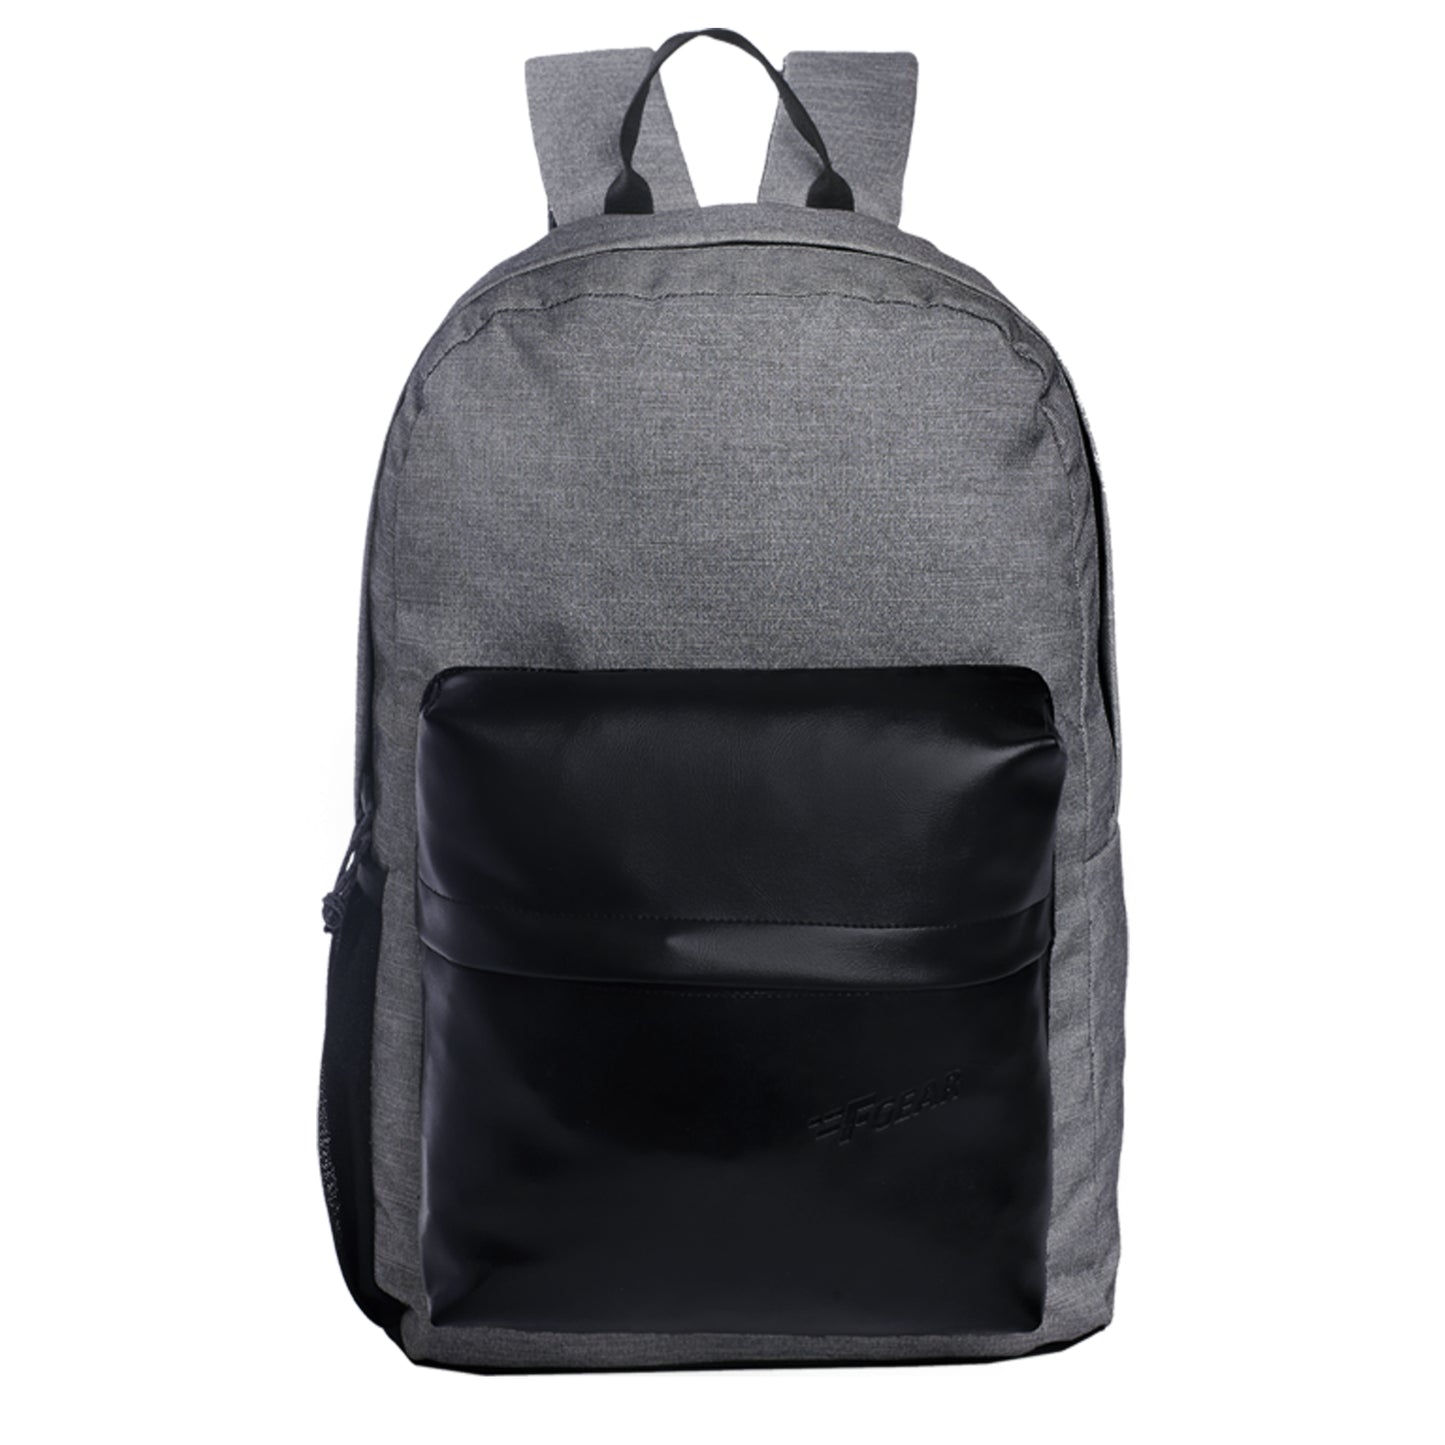 Emprise 23L Melange Grey Black Backpack